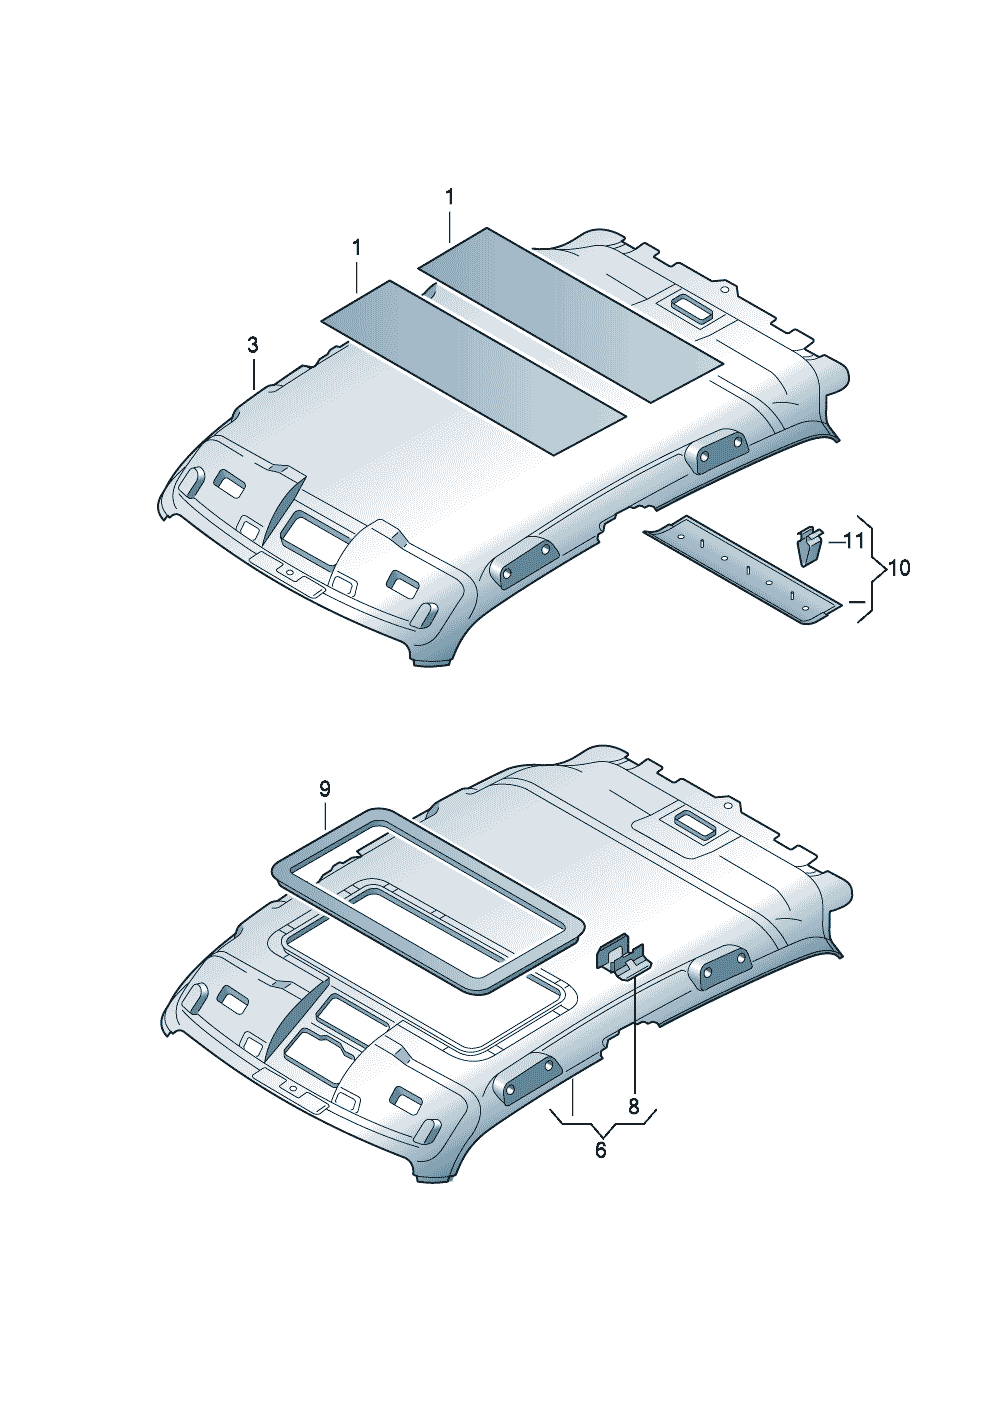 Podsufitkawytłumienie dachu  - Audi A3/S3/Sportb./Lim./qu. - a3